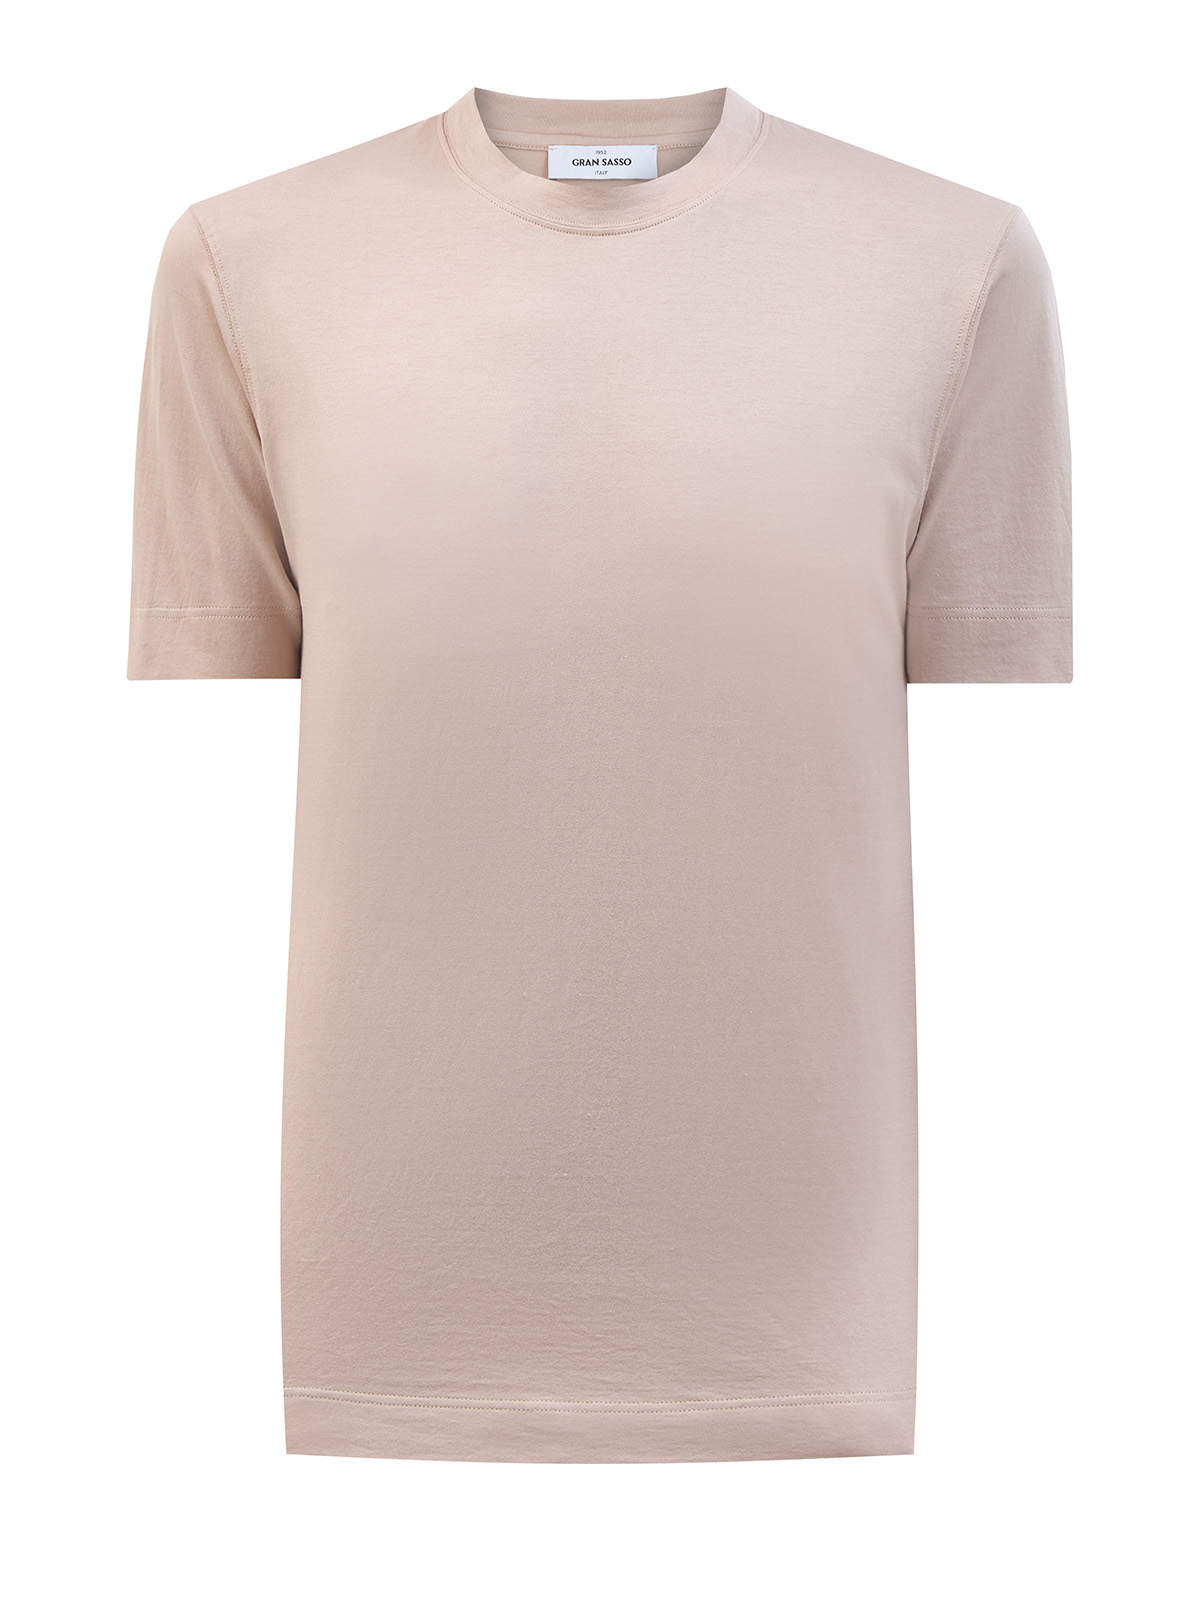 Хлопковая футболка из гладкого джерси с фирменной нашивкой GRAN SASSO, цвет бежевый, размер 48;50;52;54;56;58;60 - фото 1